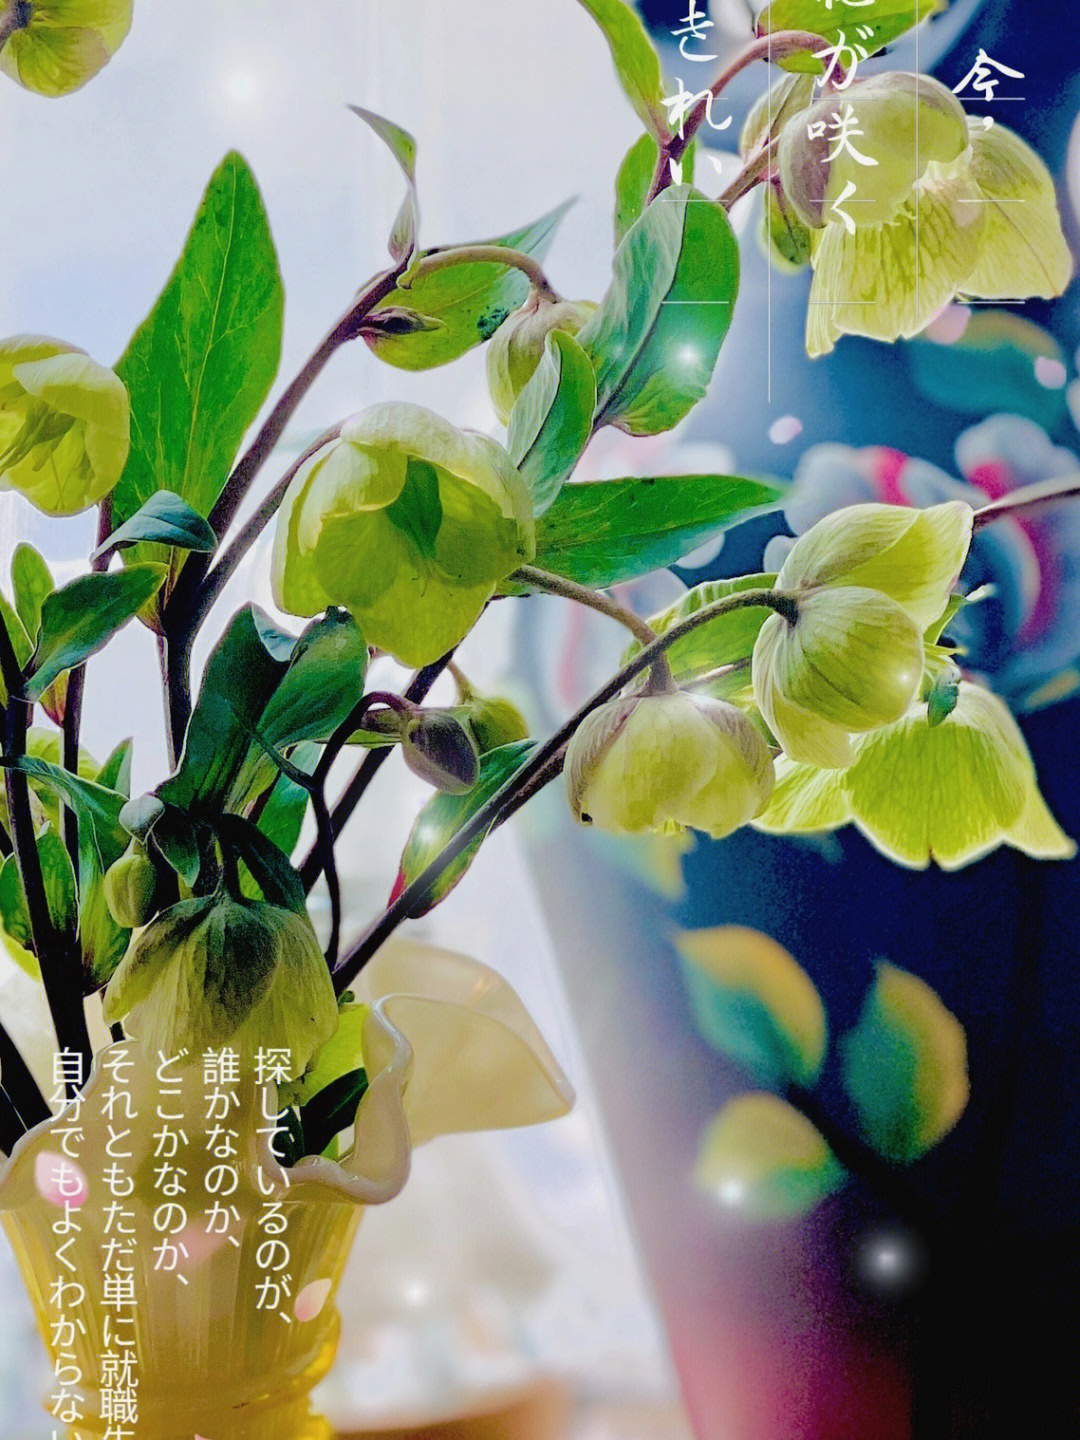 绿菟葵 含笑花图片